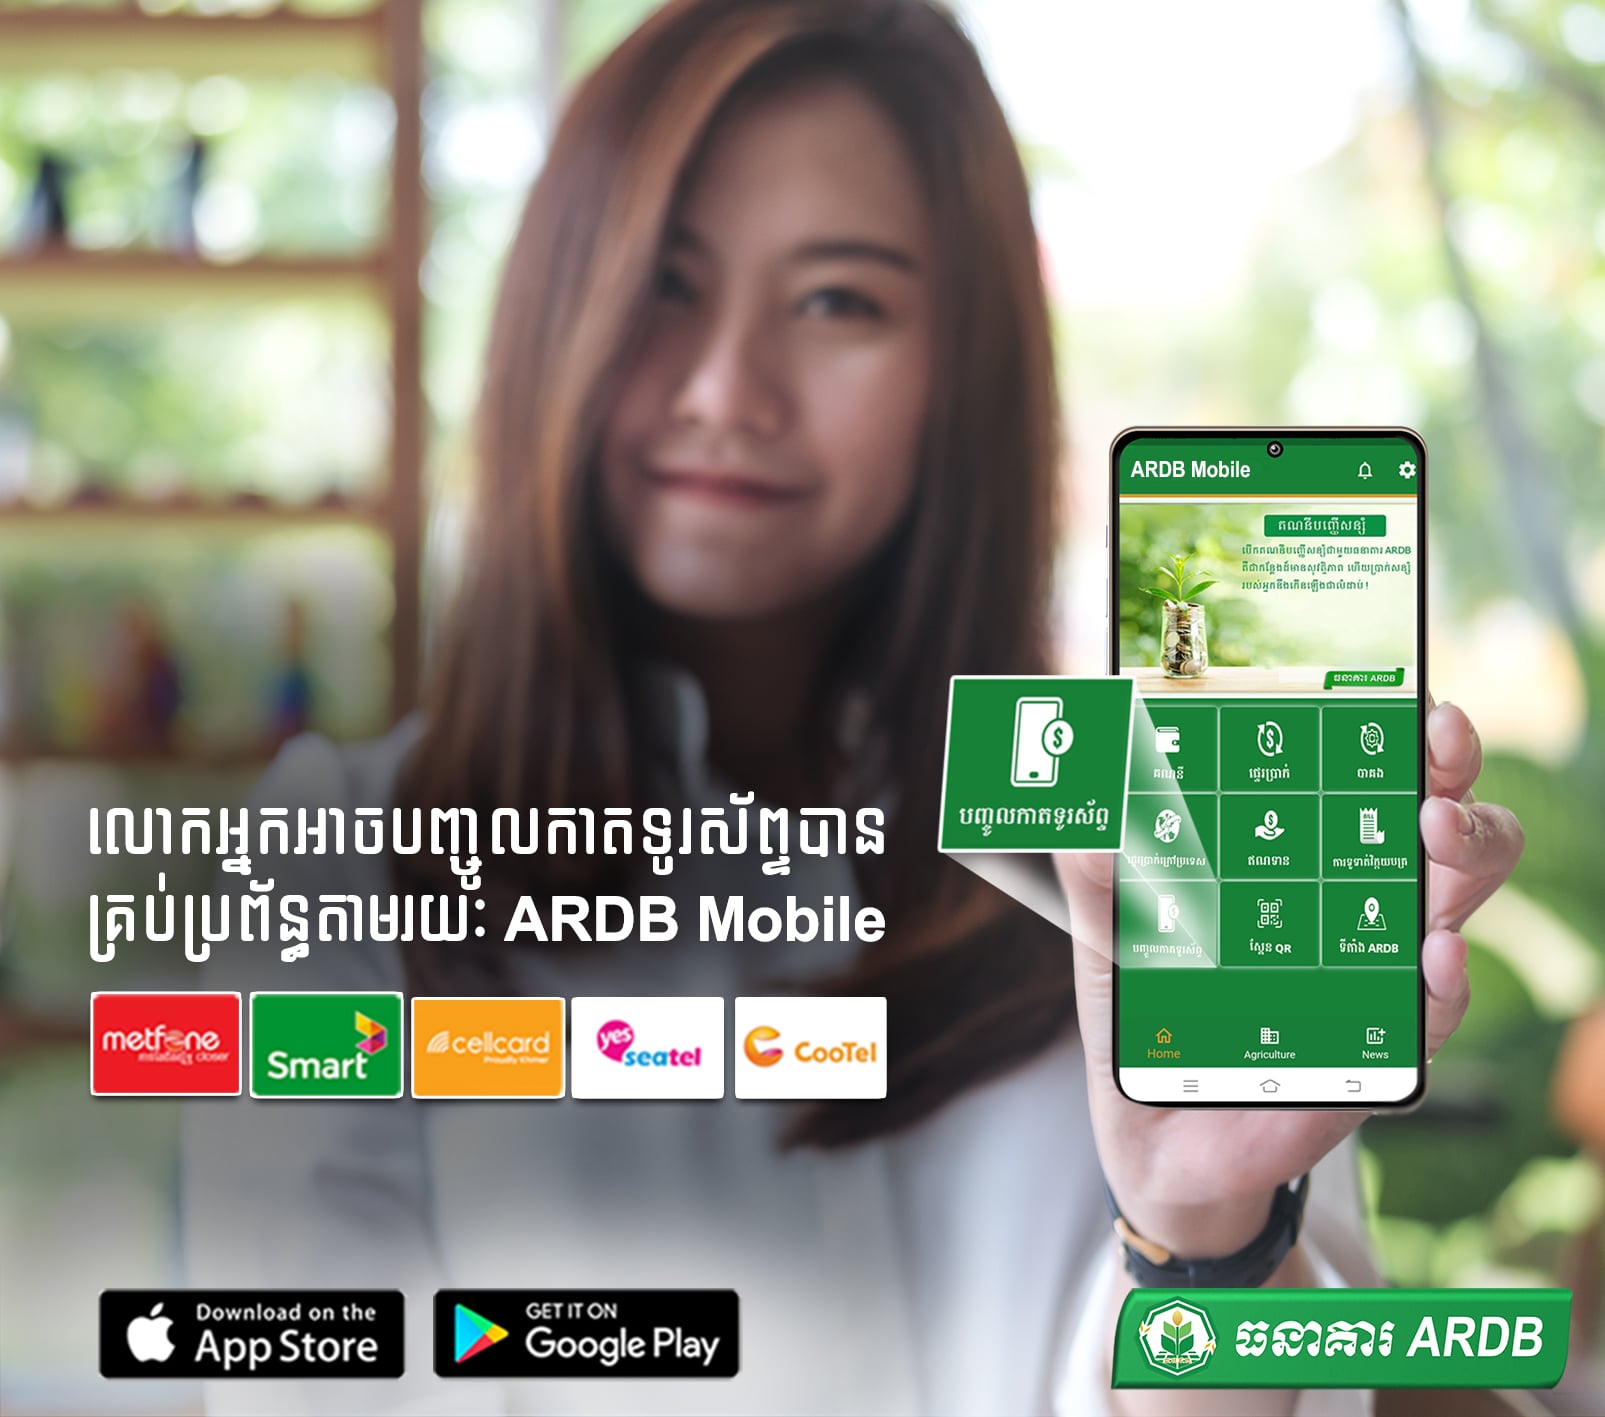 លោកអ្នកអាចបញ្ចូលកាតទូរស័ព្ទបានគ្រប់ប្រព័ន្ធ តាមរយៈ ARDB Mobile App